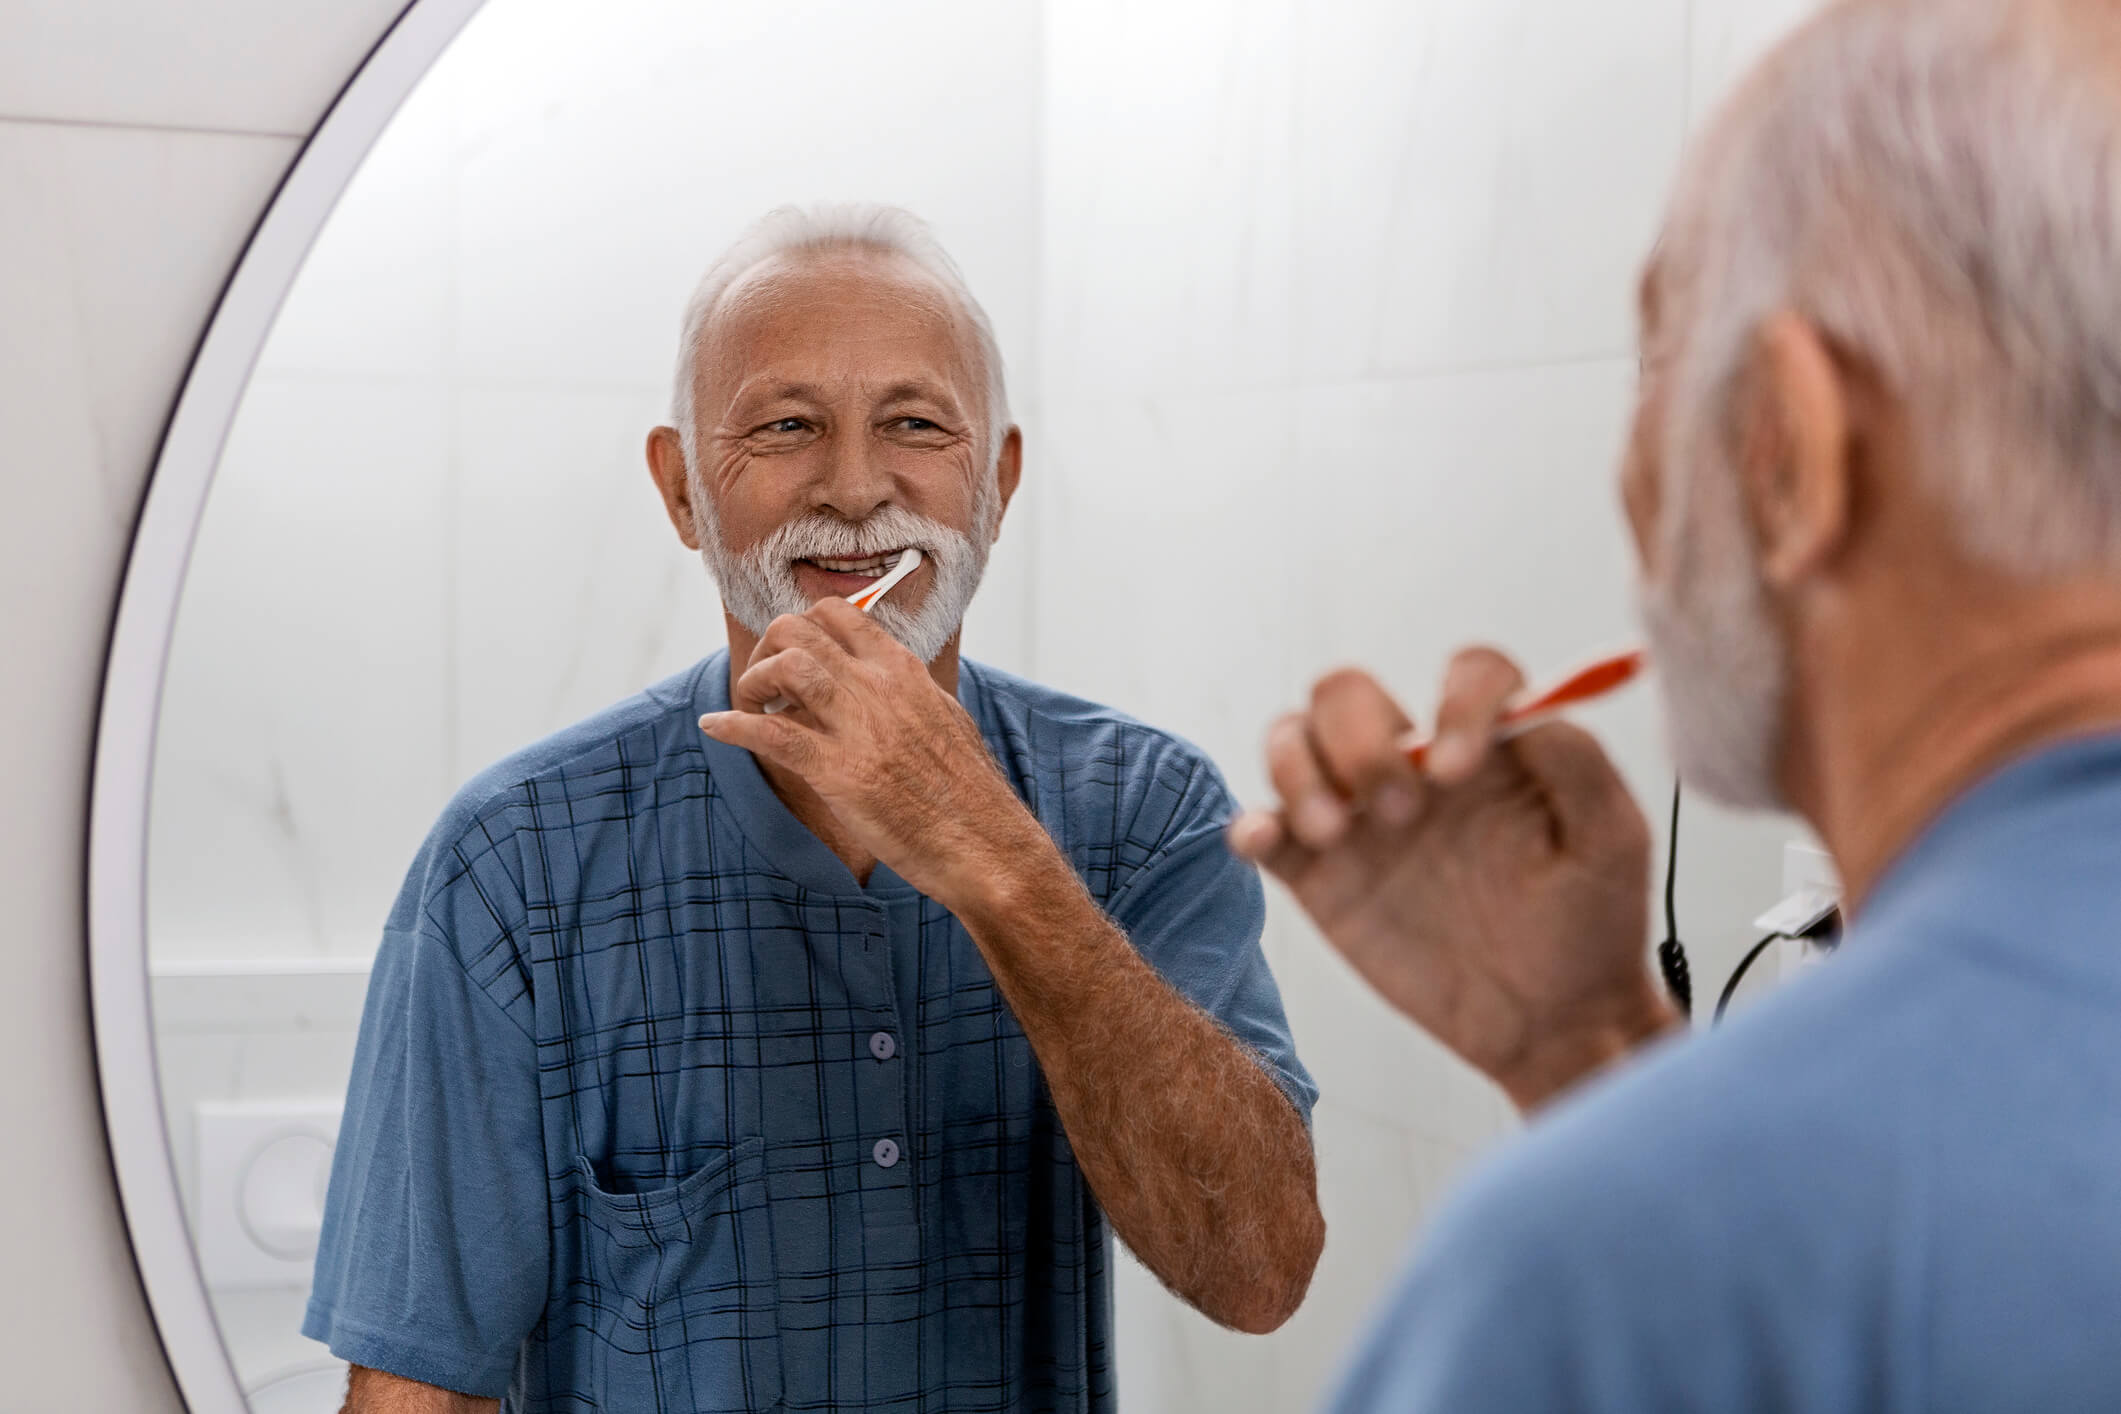 smiling senior man brushing teeth in mirror